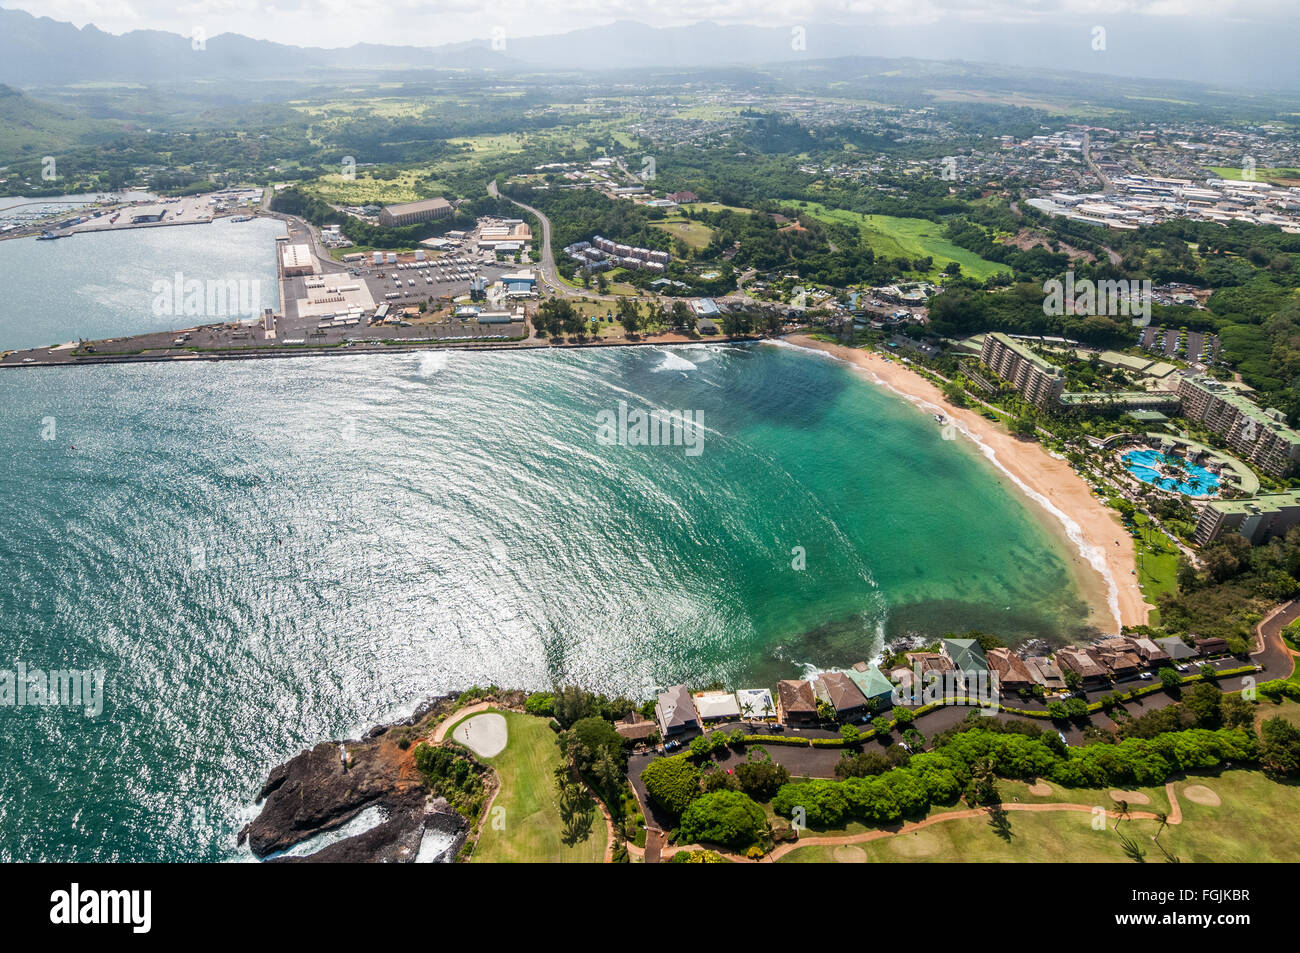 Aerial of southern Lihue featuring the Kauai Marriott Resort and Kalapaki Beach, Kauai, Hawaii. Stock Photo